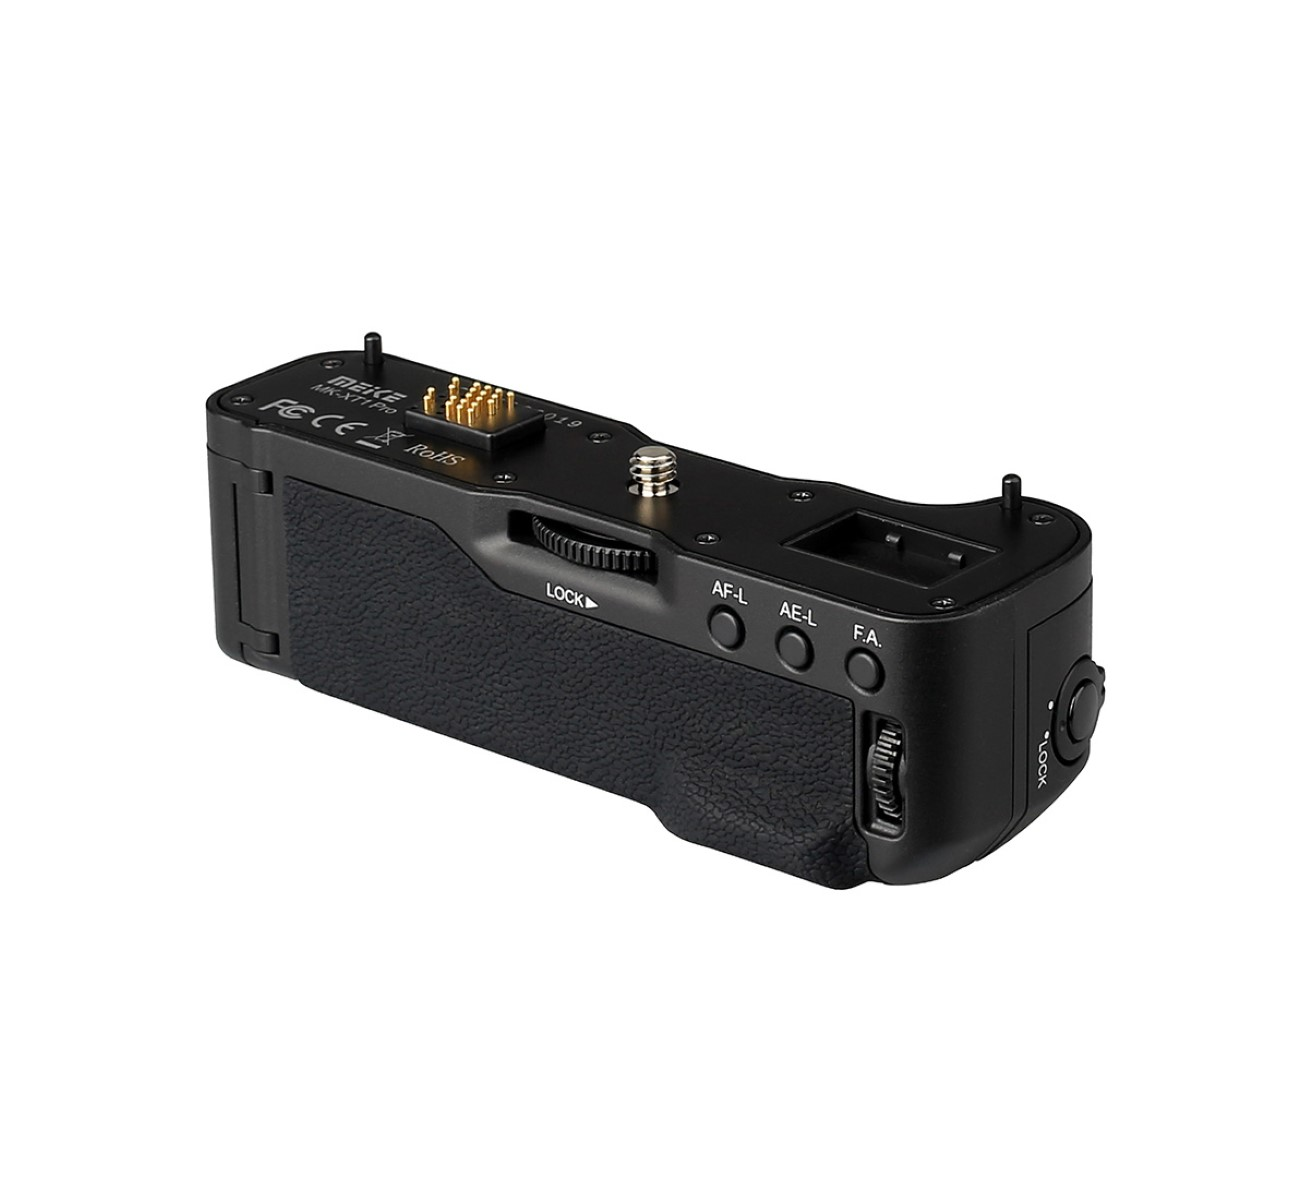 Funk-Timer-Fernauslöser Fujifilm ähnlich Black mit Batteriegriff VG-XT1, Funk-Timer-Fernauslöser, Batteriegriff mit X-T1 MEIKE